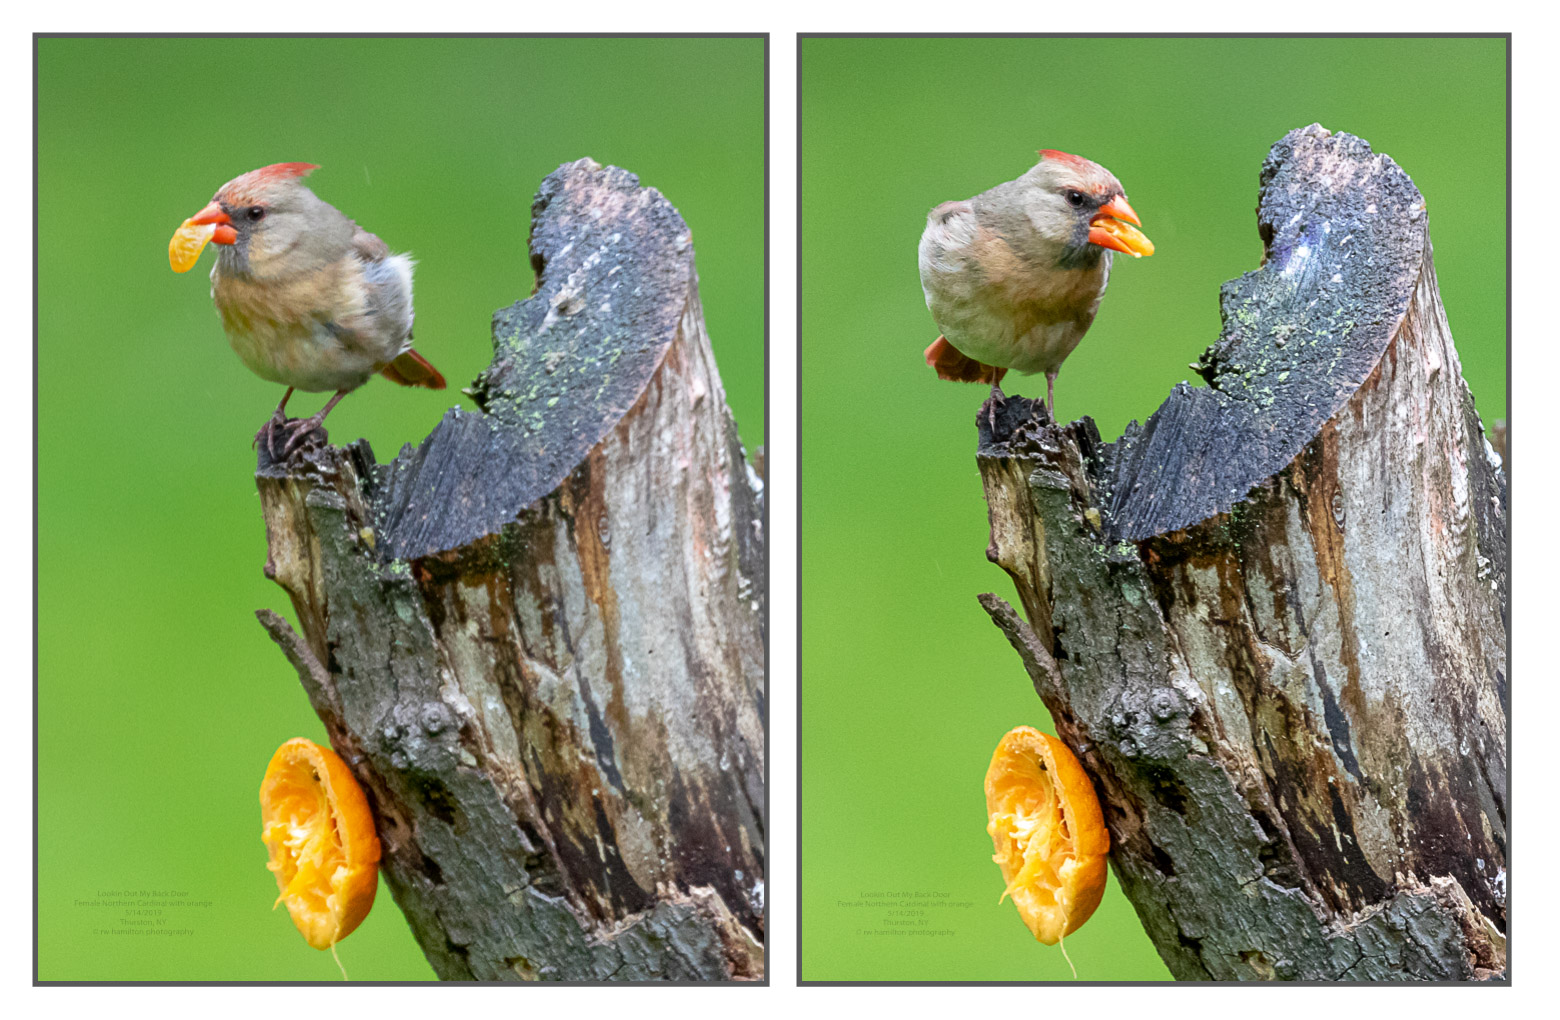 Female Northern Cardinal enjoying an orange